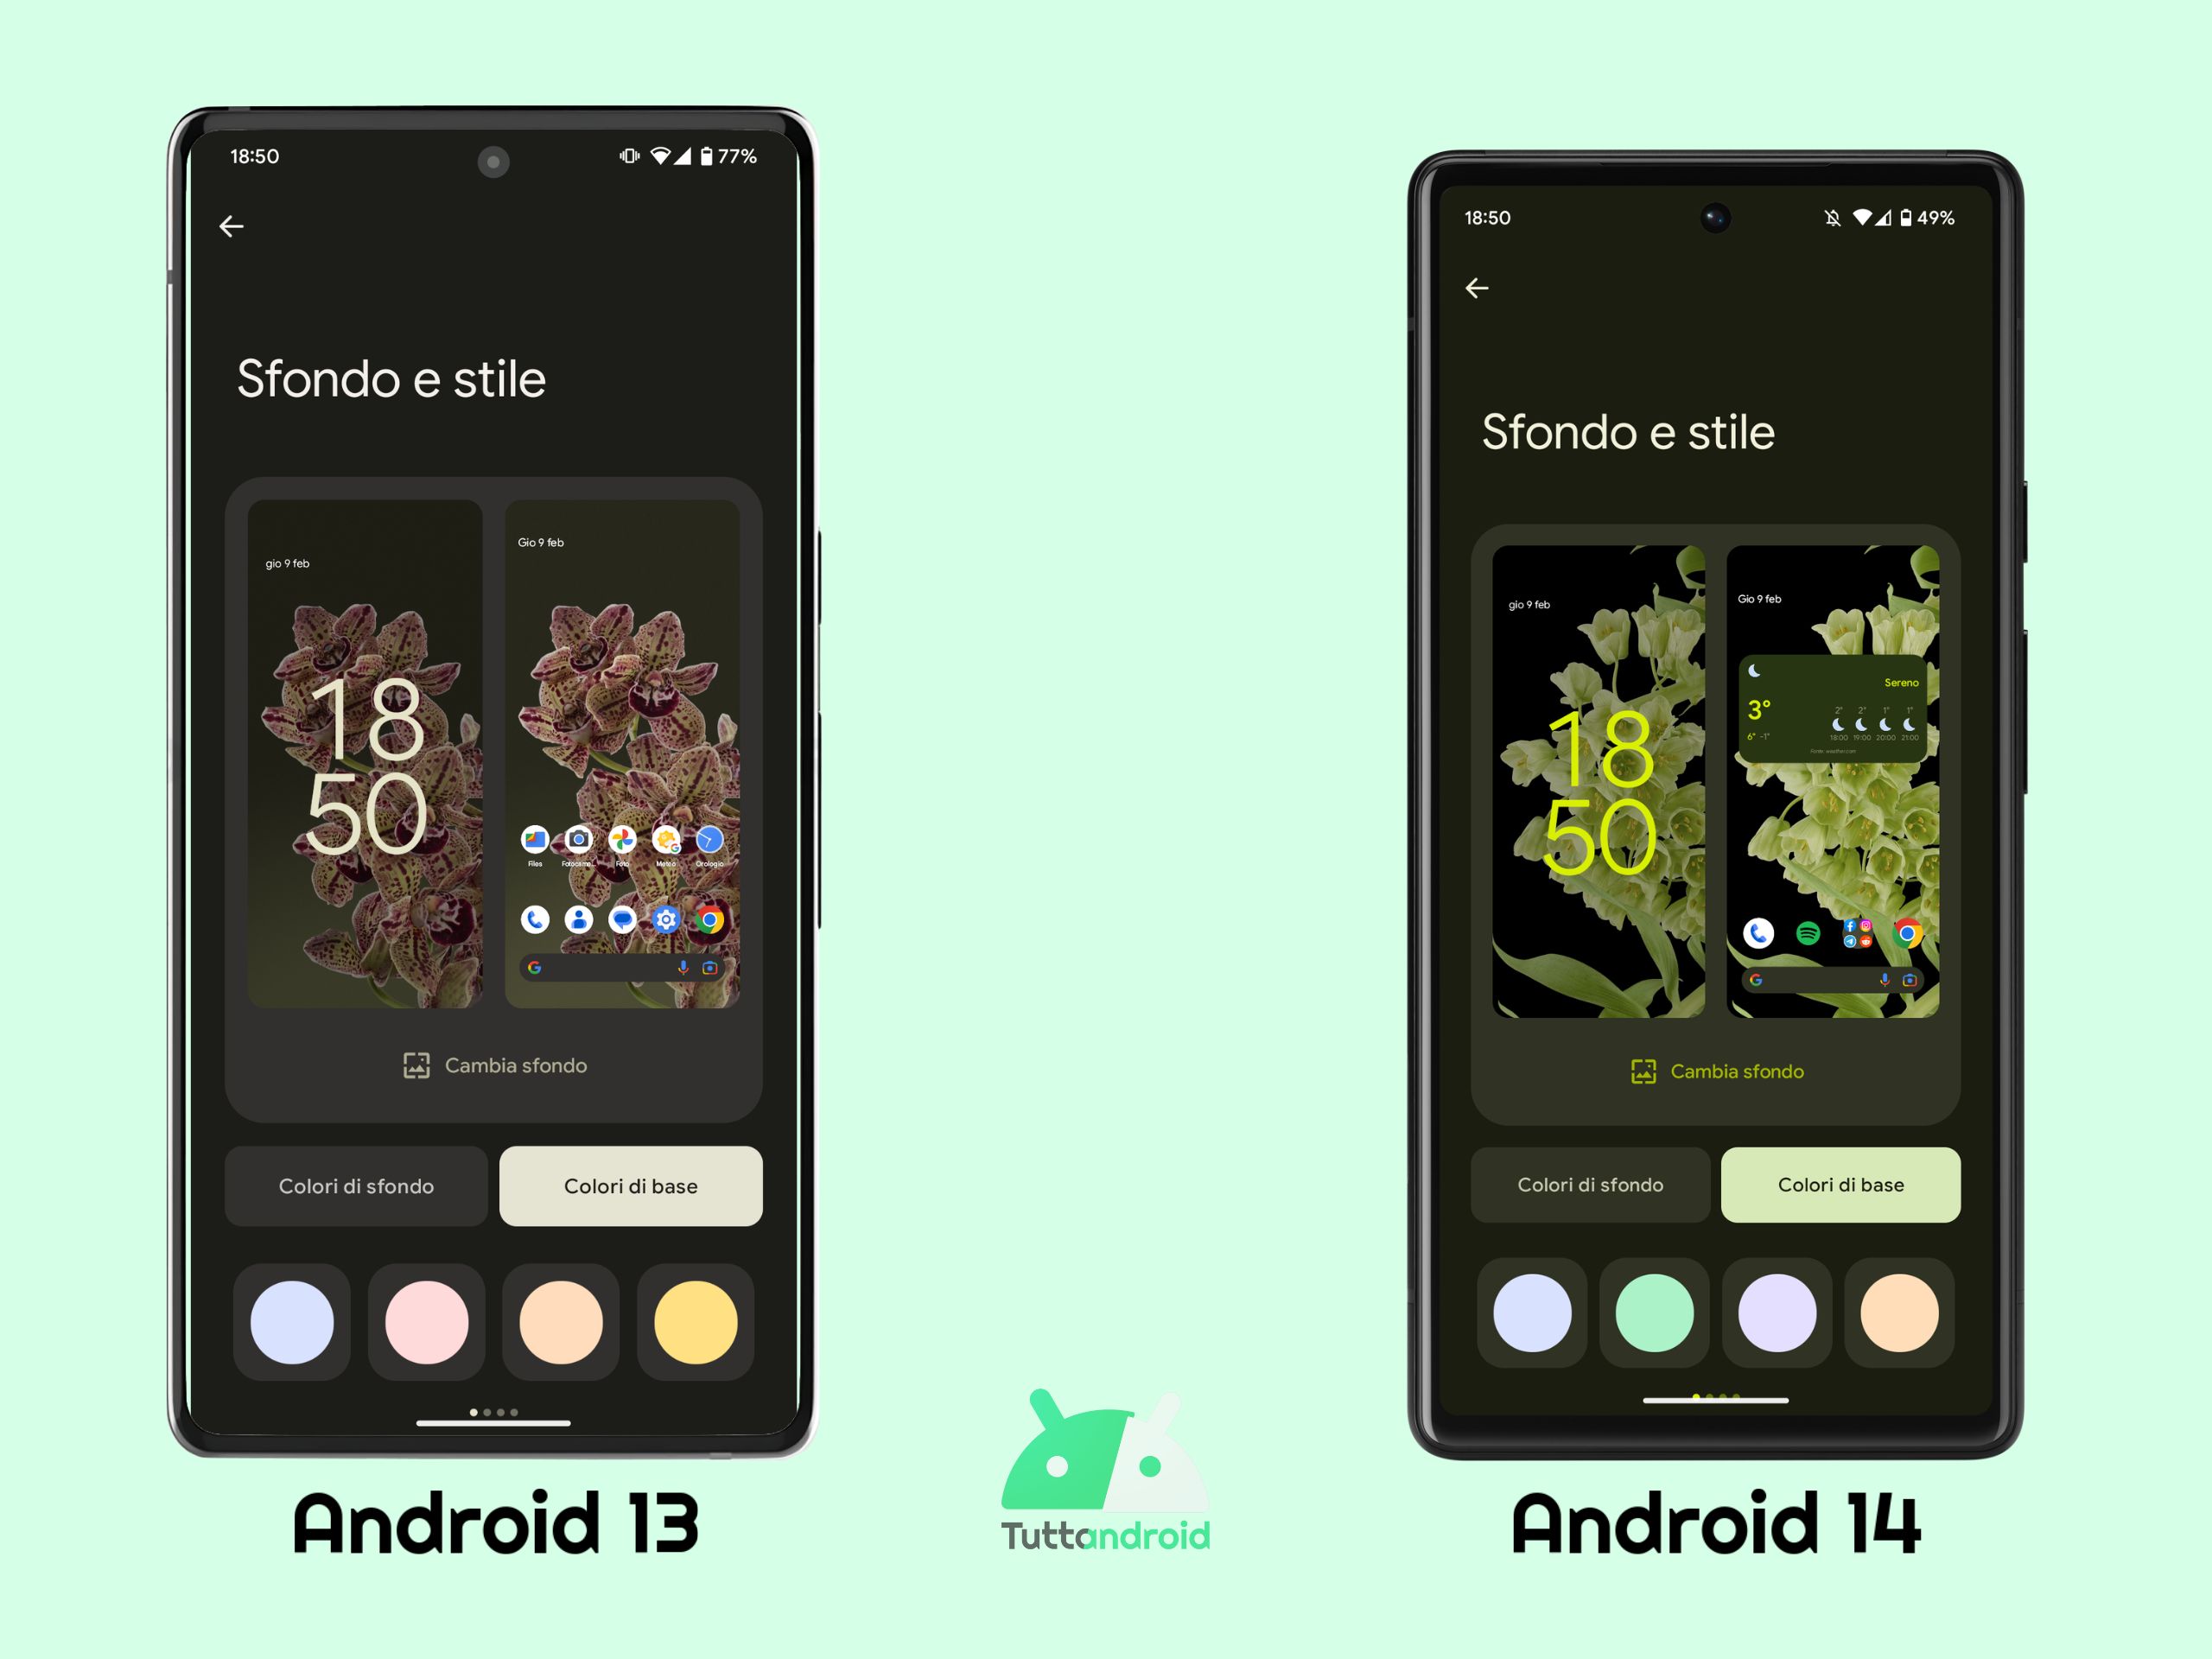 Sfondo e stile - Android 13 vs Android 14 DP1